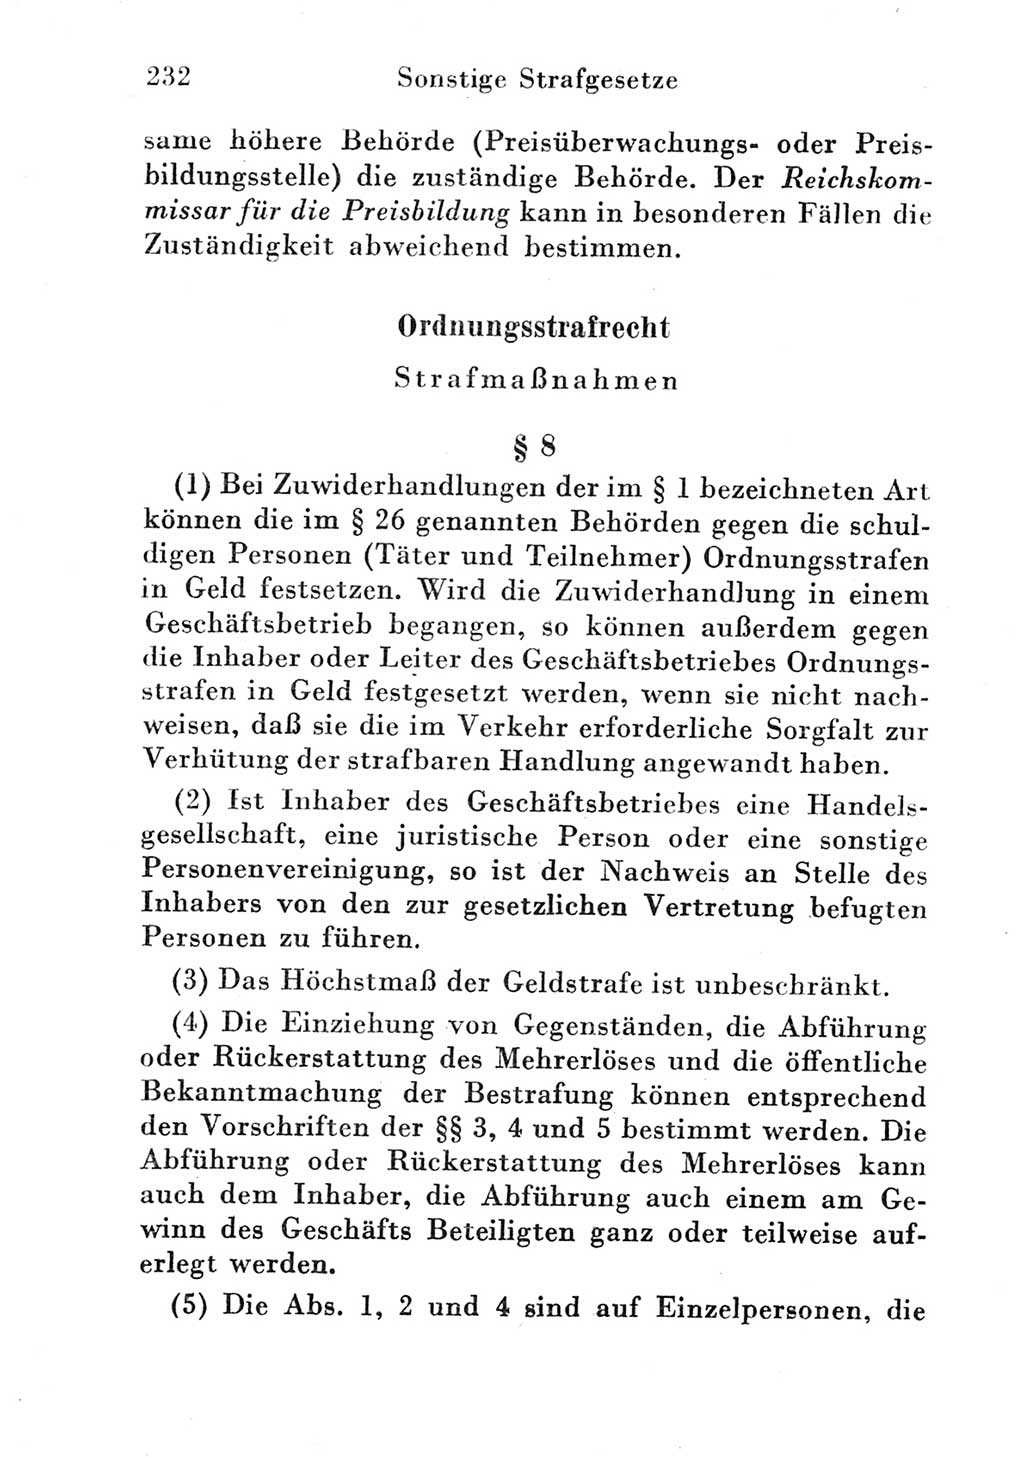 Strafgesetzbuch (StGB) und andere Strafgesetze [Deutsche Demokratische Republik (DDR)] 1951, Seite 232 (StGB Strafges. DDR 1951, S. 232)